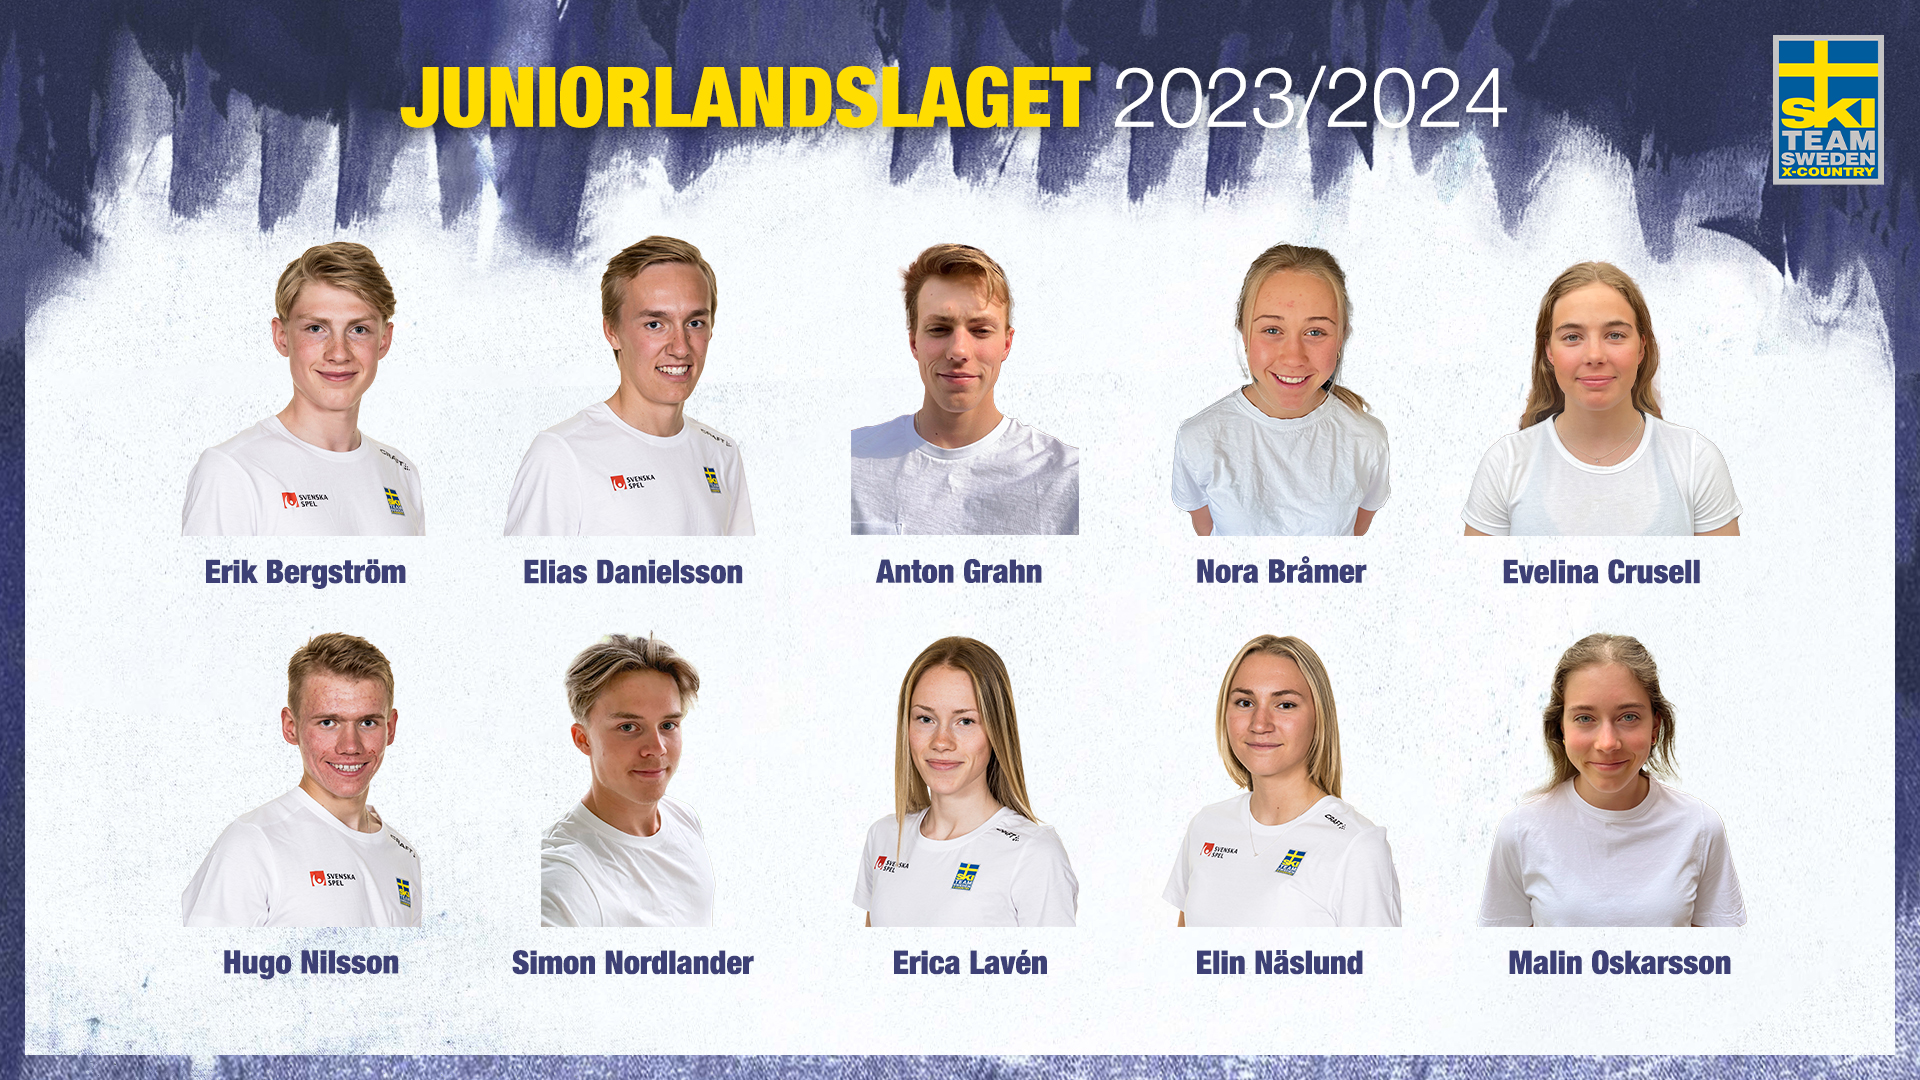 Team Svenska Spel Juniorlandslaget